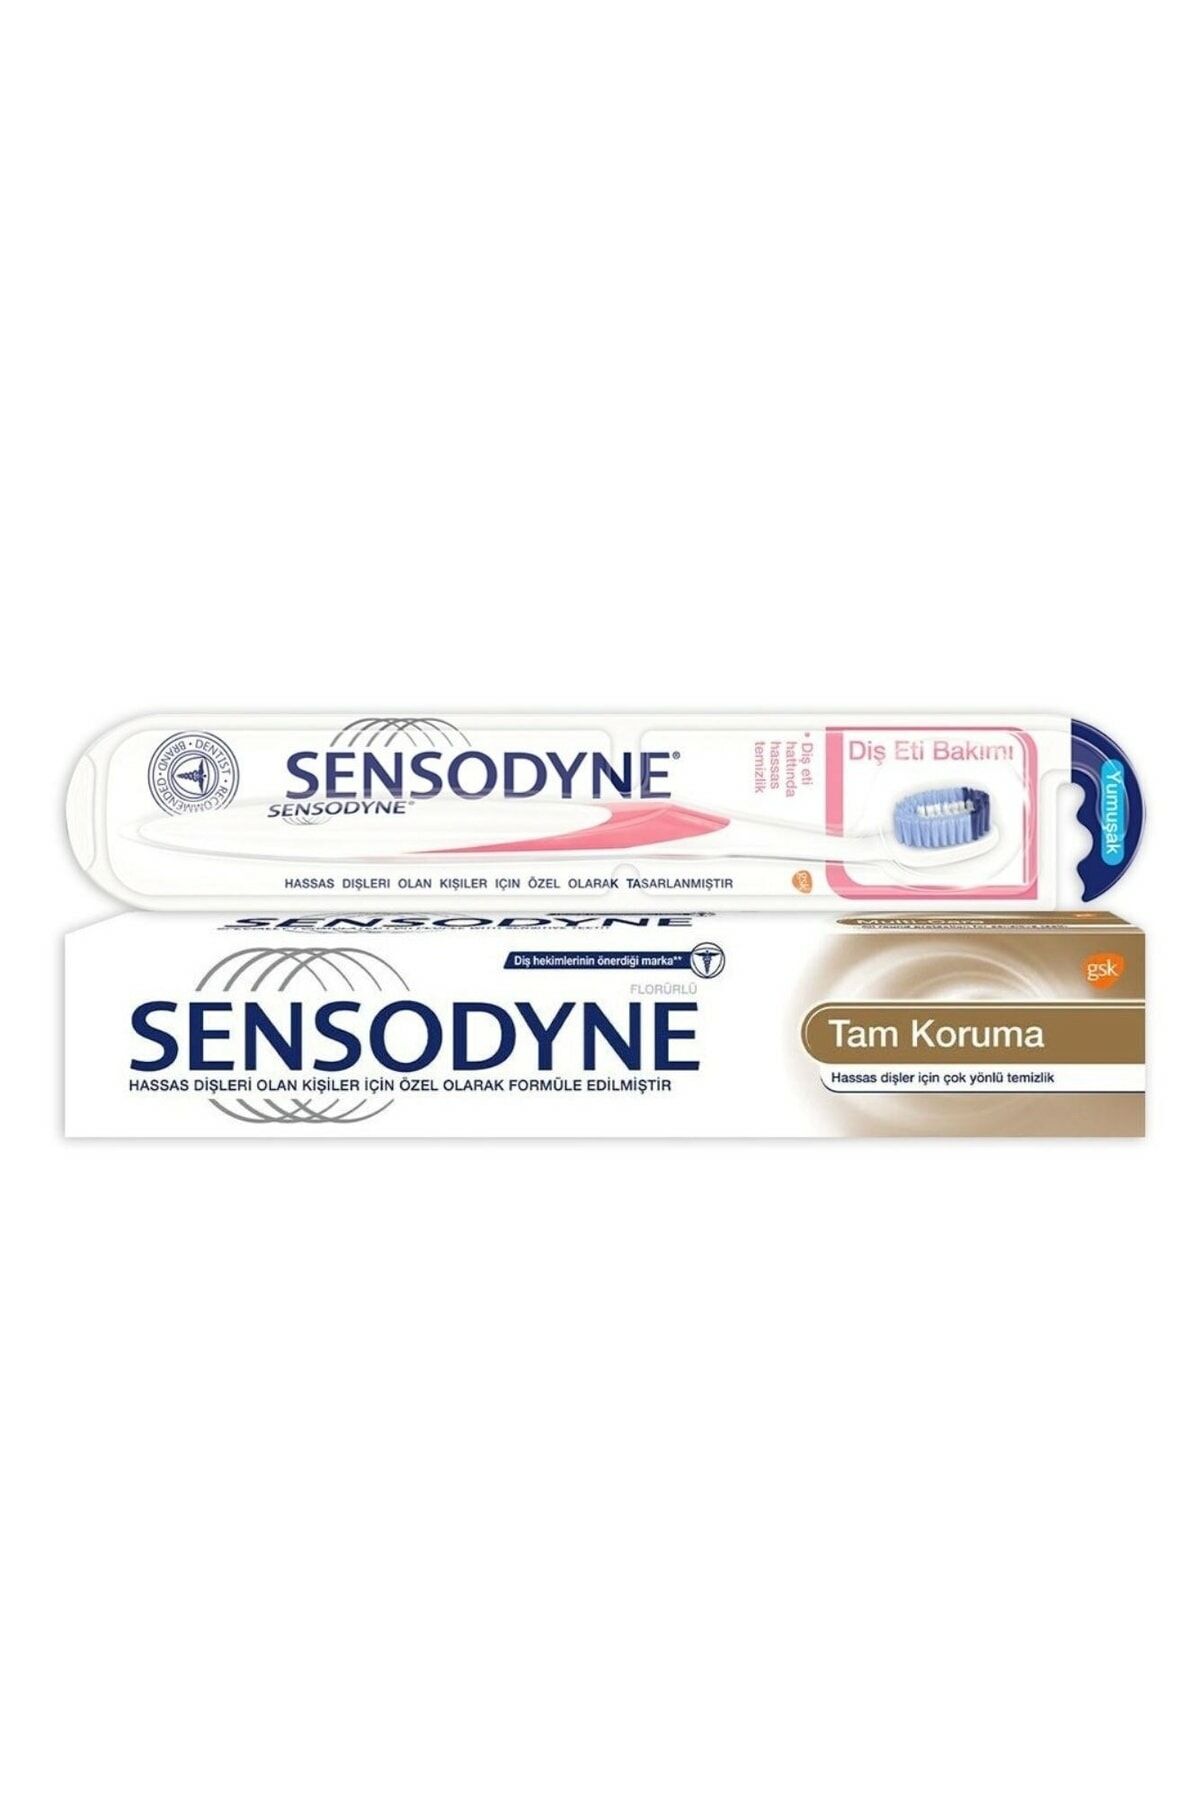 Sensodyne Total Care Diş Macunu 75 ml + Diş Fırçası Diş Eti Bakımı